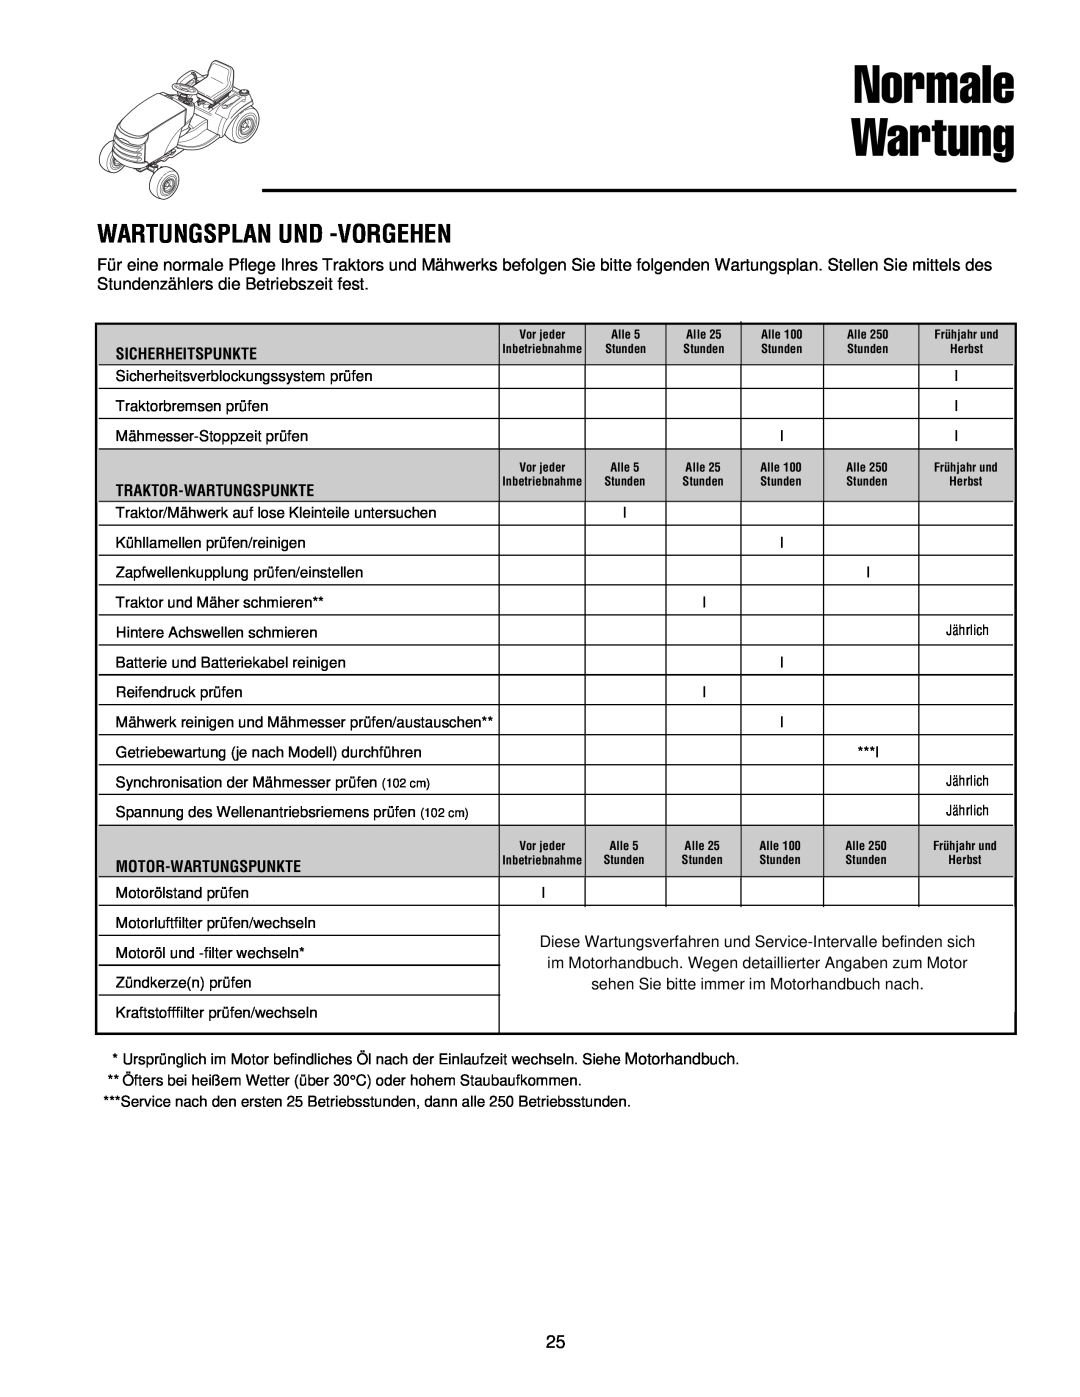 Simplicity 300 manual Normale Wartung, Wartungsplan Und -Vorgehen 